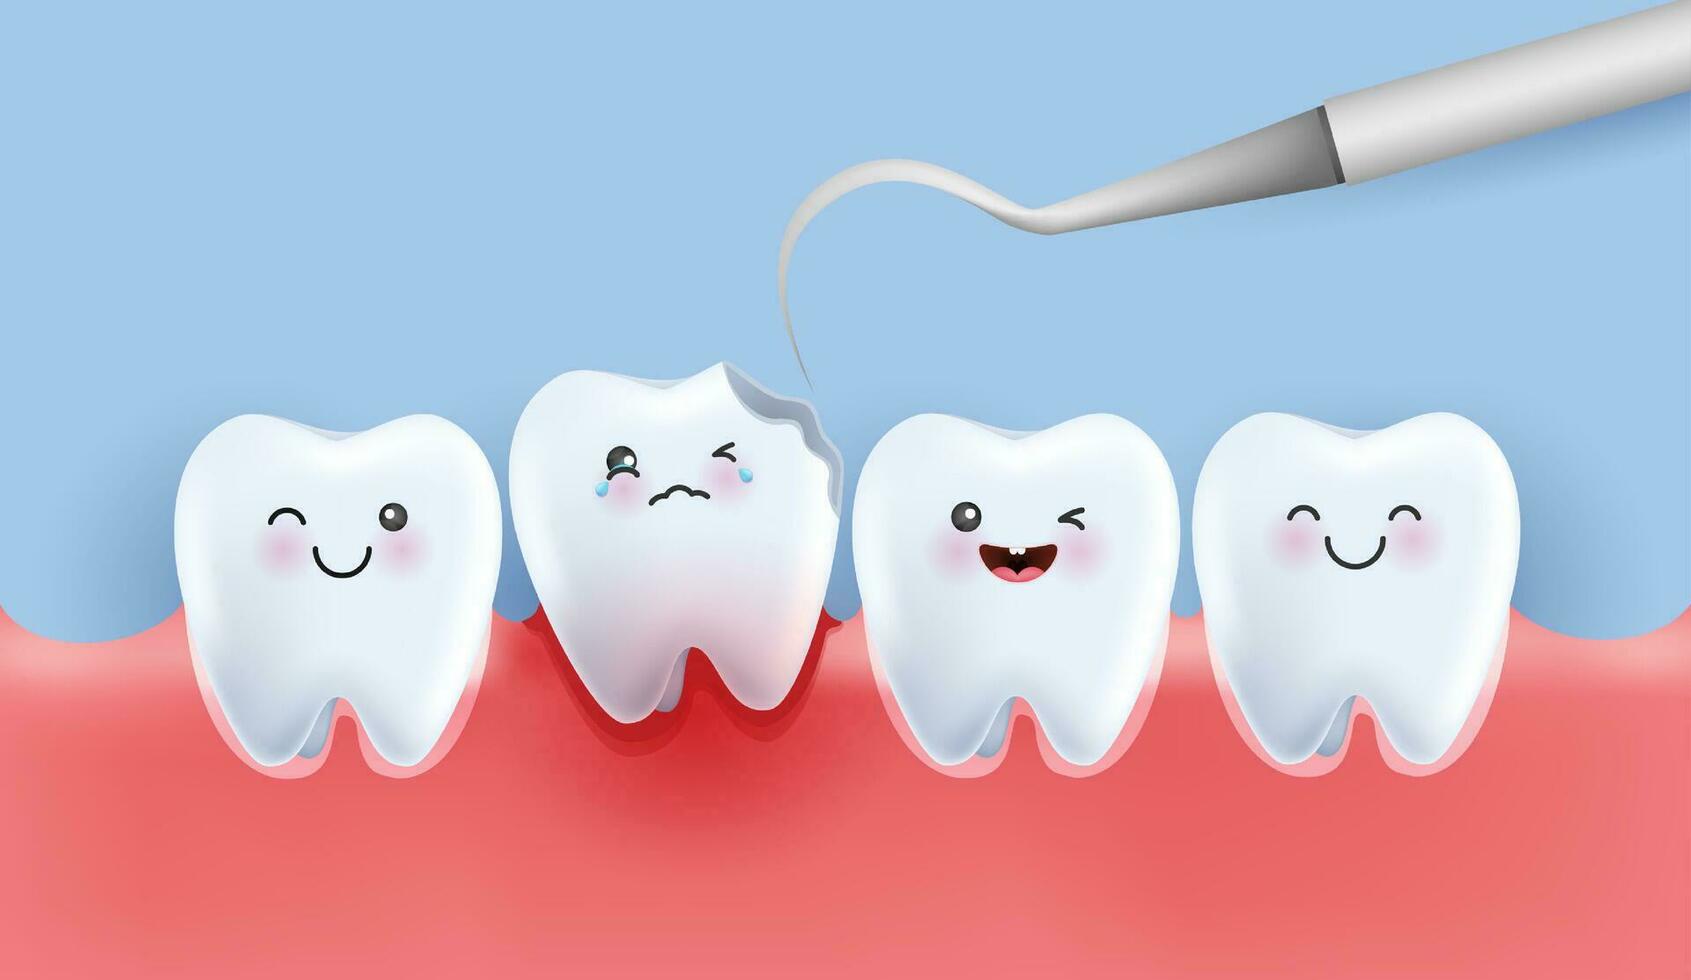 Dental Pflege Illustration Satz. Zahnärzte behandeln Zähne zerfallen zu vermeiden Schmerzen wann kauen. Zähne zerfallen Behandlung Konzept. entfernen Plakette, behandeln Zähne Verfall. medizinisch Apps, Websites und Krankenhaus. Vektor. vektor